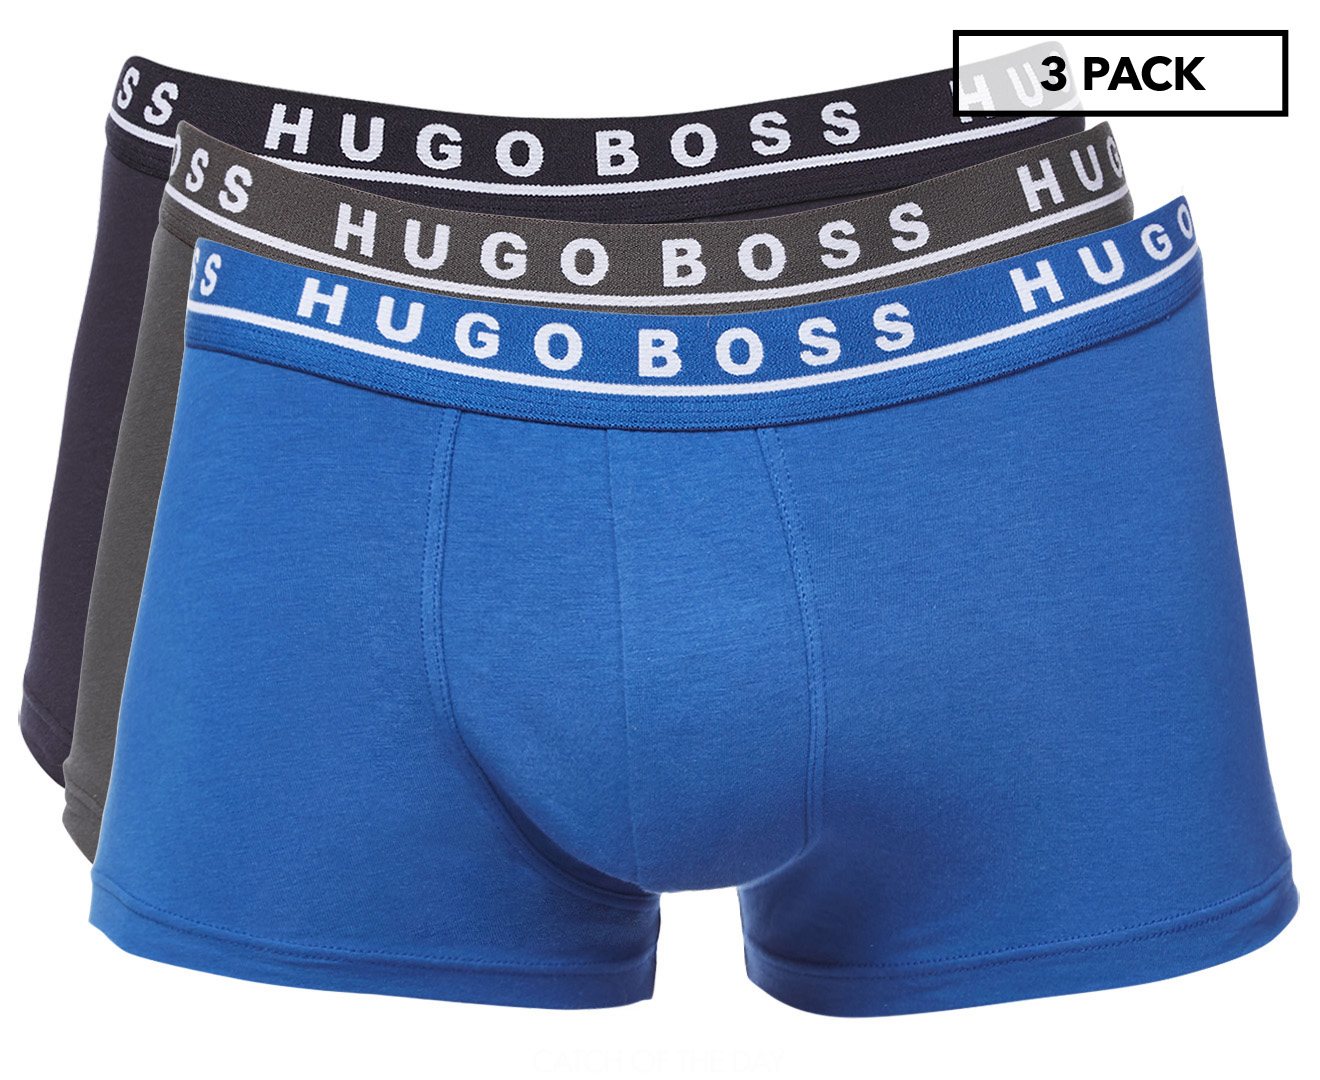 Hugo Boss Men's Trunk 3-Pack - Assorted | Catch.co.nz